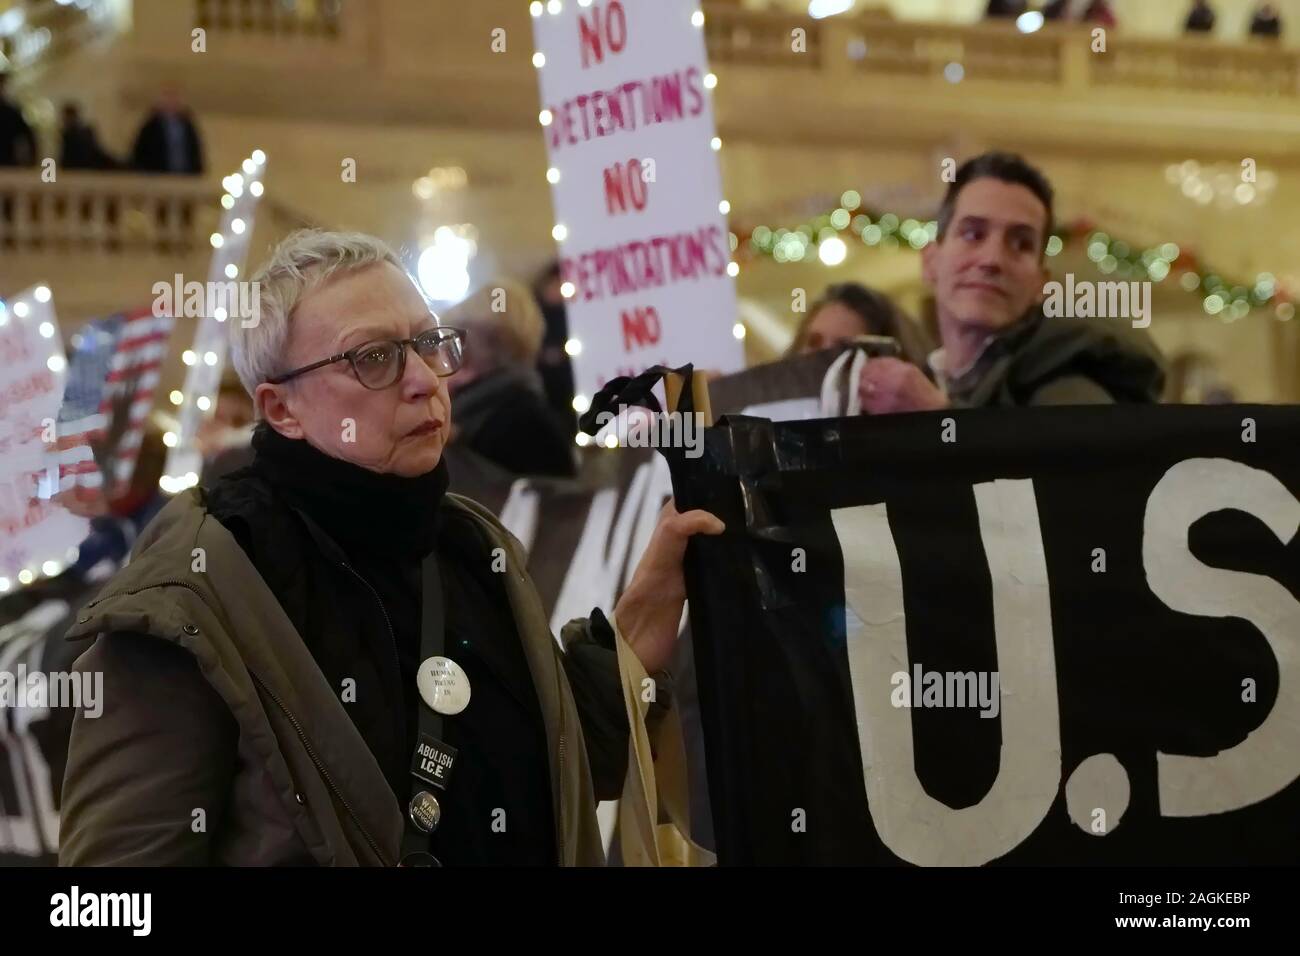 New York, NEW YORK / USA - 19 décembre 2019 : groupe militant de ce lieu et résister à NYC est titulaire d'une bannière et regarde pendant une manifestation silencieuse stoïquement un Banque D'Images